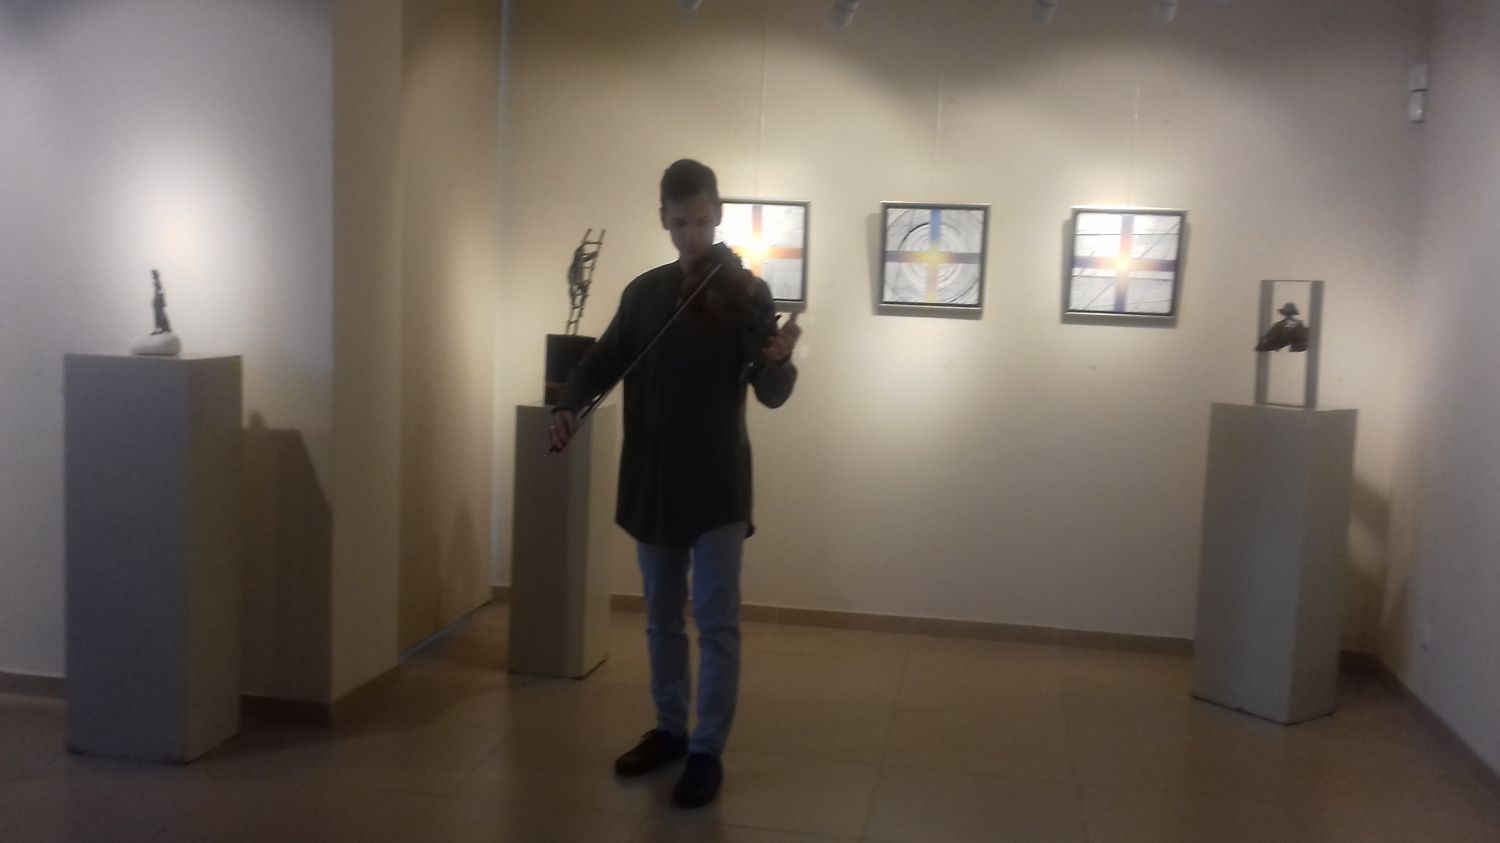 Na zdjęciu skrzypek grający na środku sali wystawienniczej, w tle obrazy na ścianach.